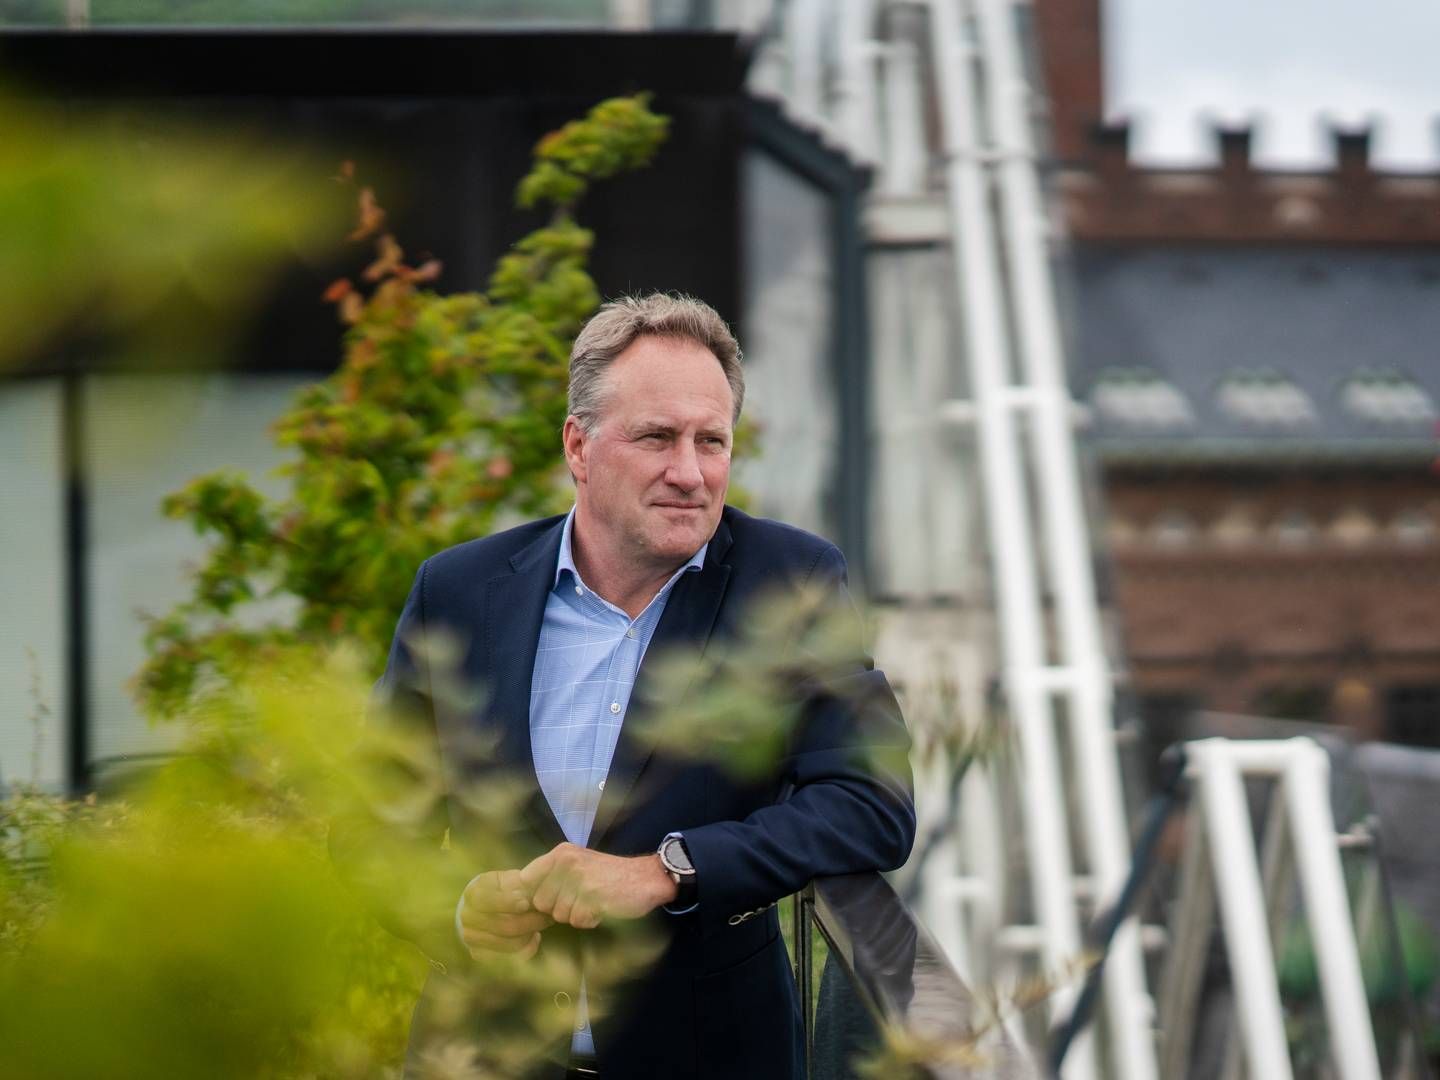 Adm. direktør i Dansk Industri Lars Sandahl Sørensen deltager som del af et topmøde i Helsingør. | Foto: Stine Bidstrup